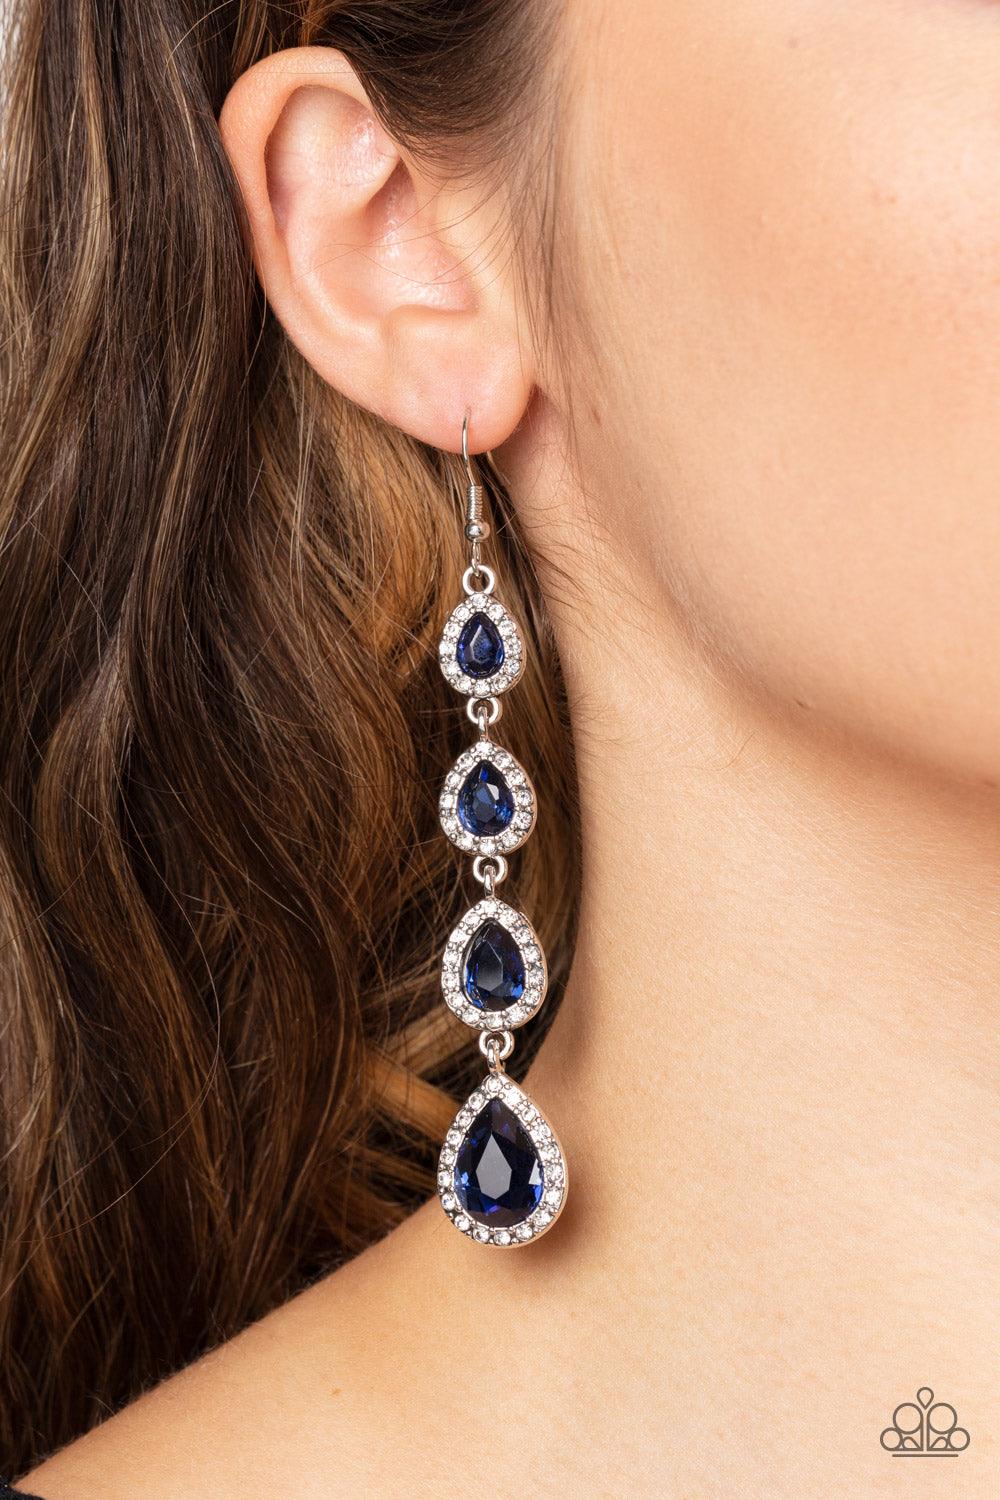 Confidently Classy Blue Earrings - Jewelry by Bretta